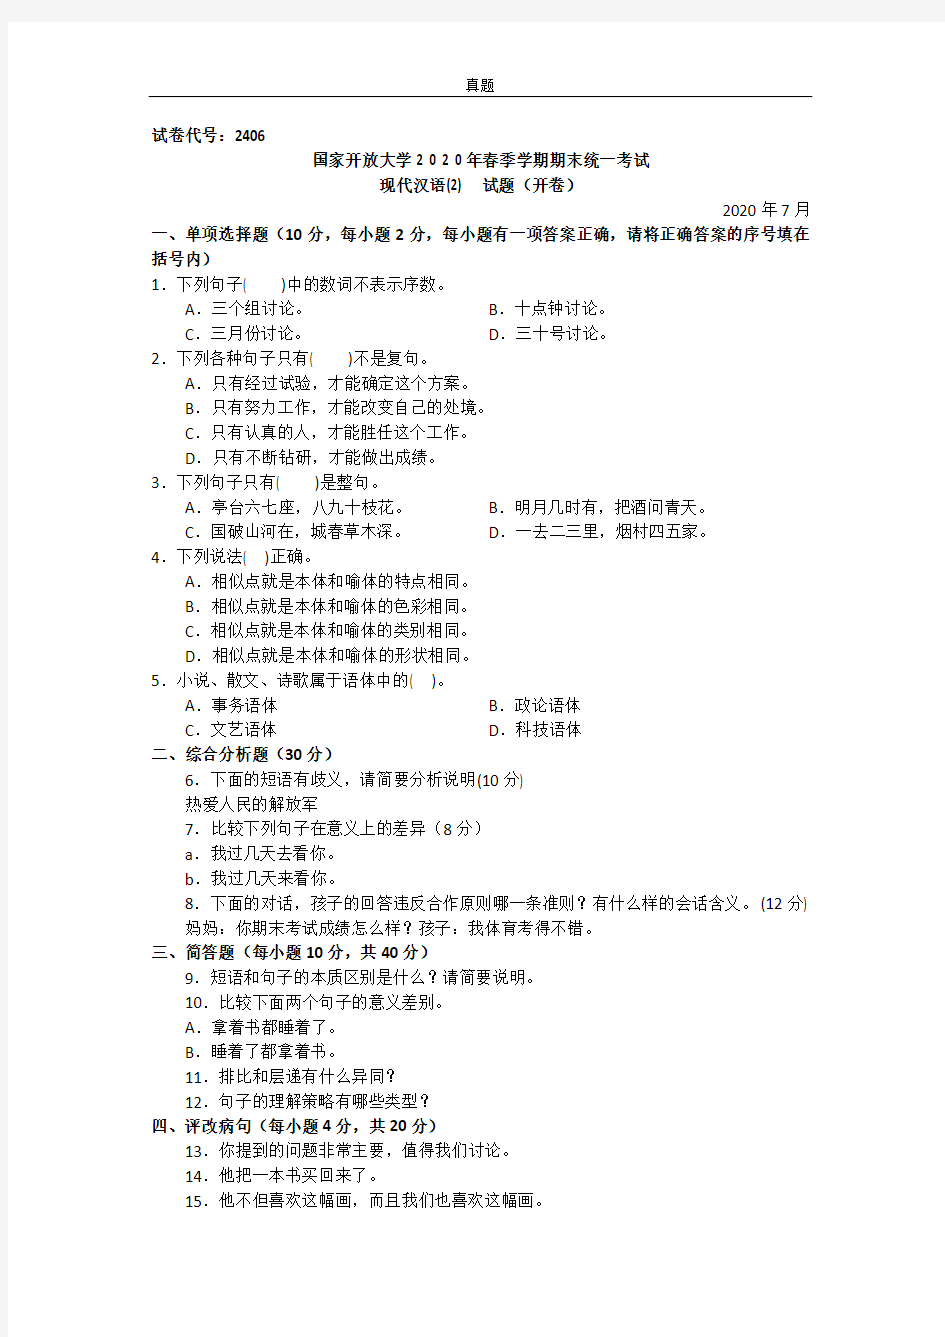 现代汉语(2)(专科)-2020.07国家开放大学2020年春季学期期末统一考试试题及答案